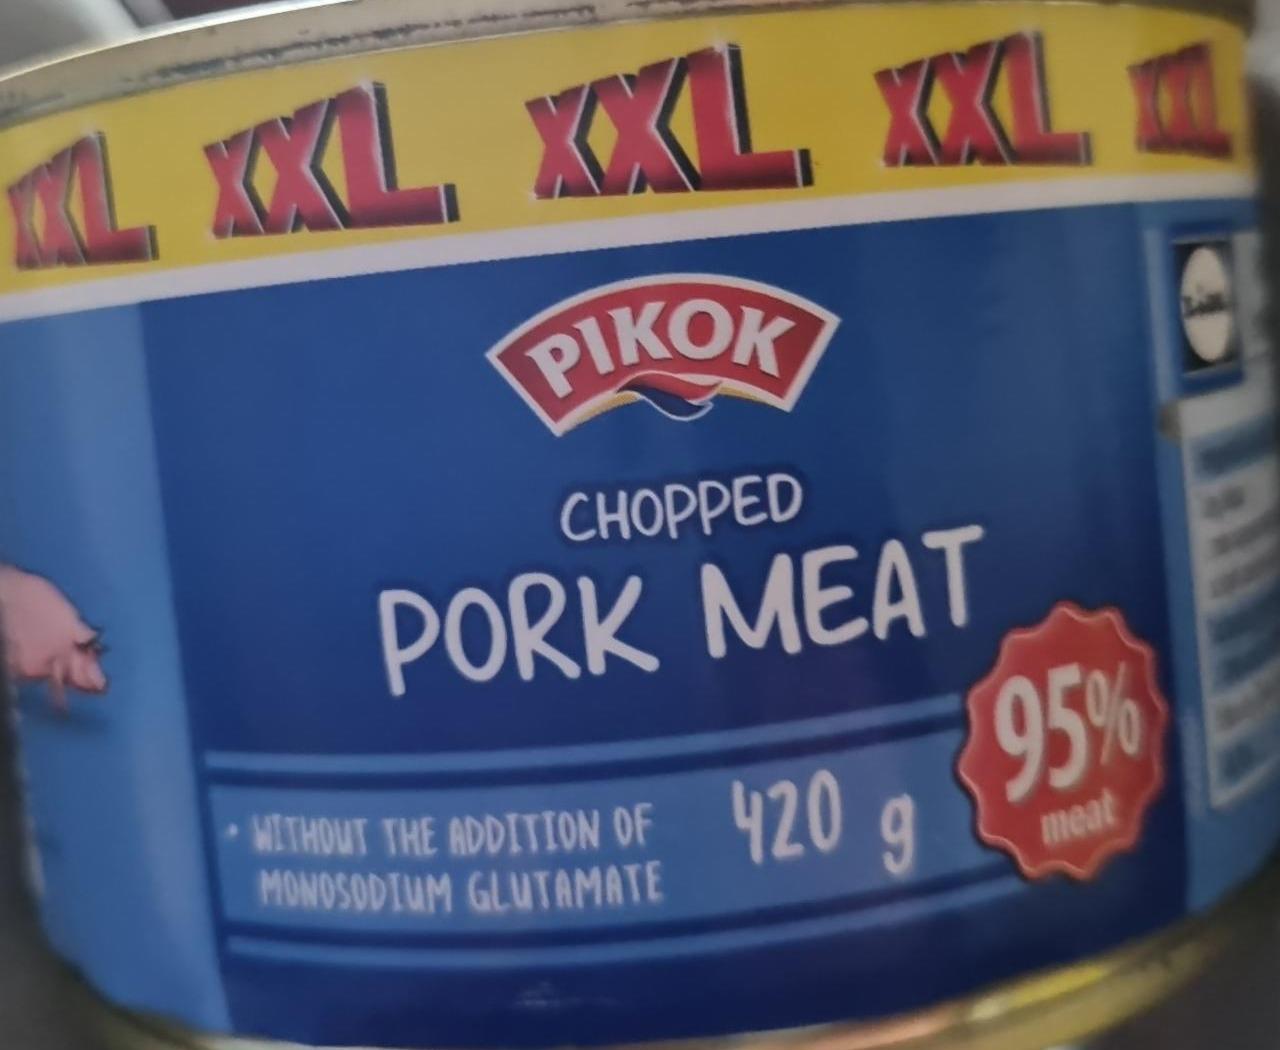 Fotografie - Chopped pork meat Pikok xxl